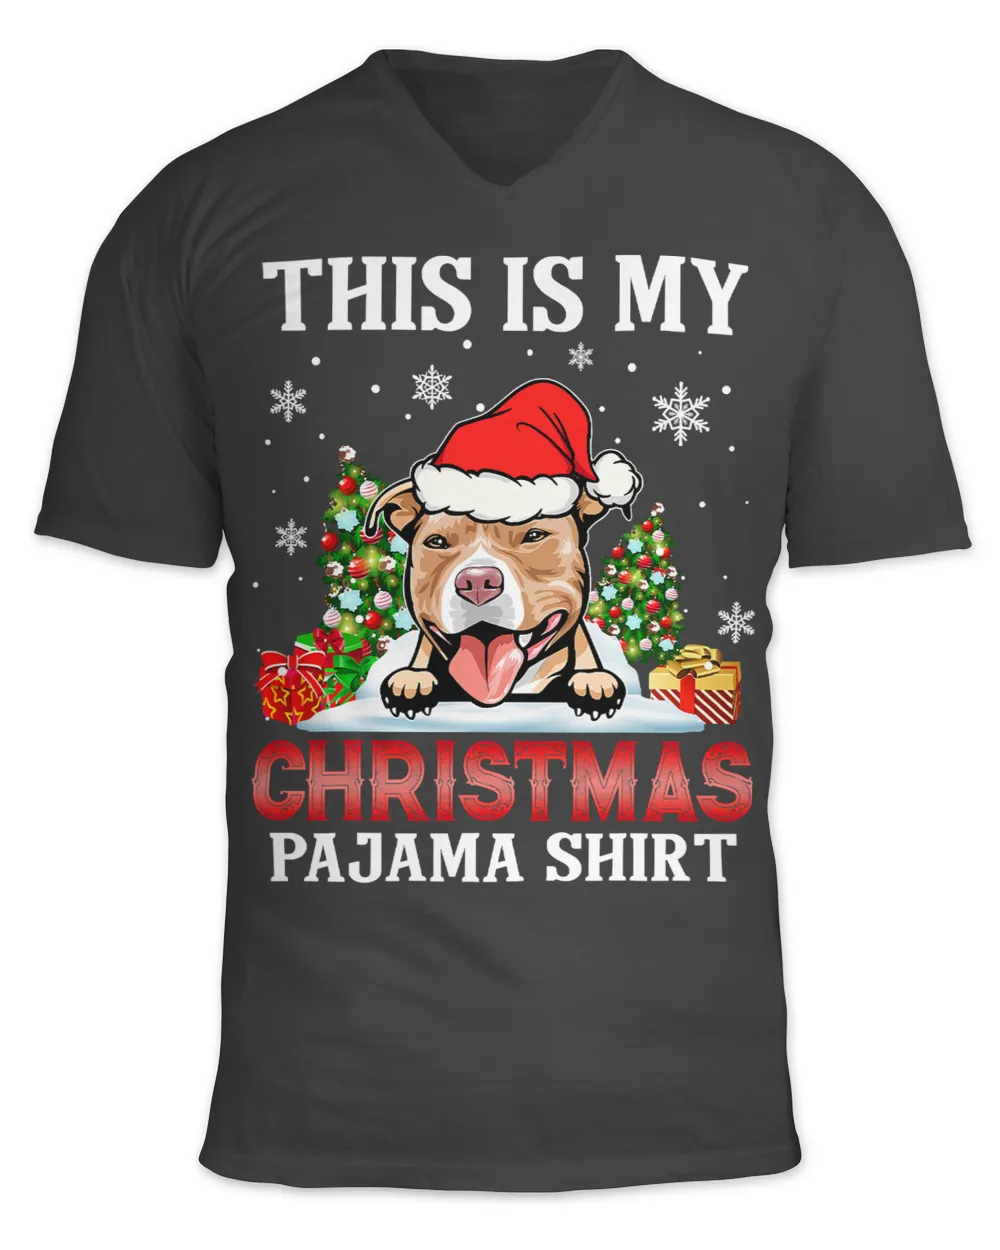 Bully Dog This Is My Christmas Pajama Pitbull Christmas Ornament 316 Pitbull Dog